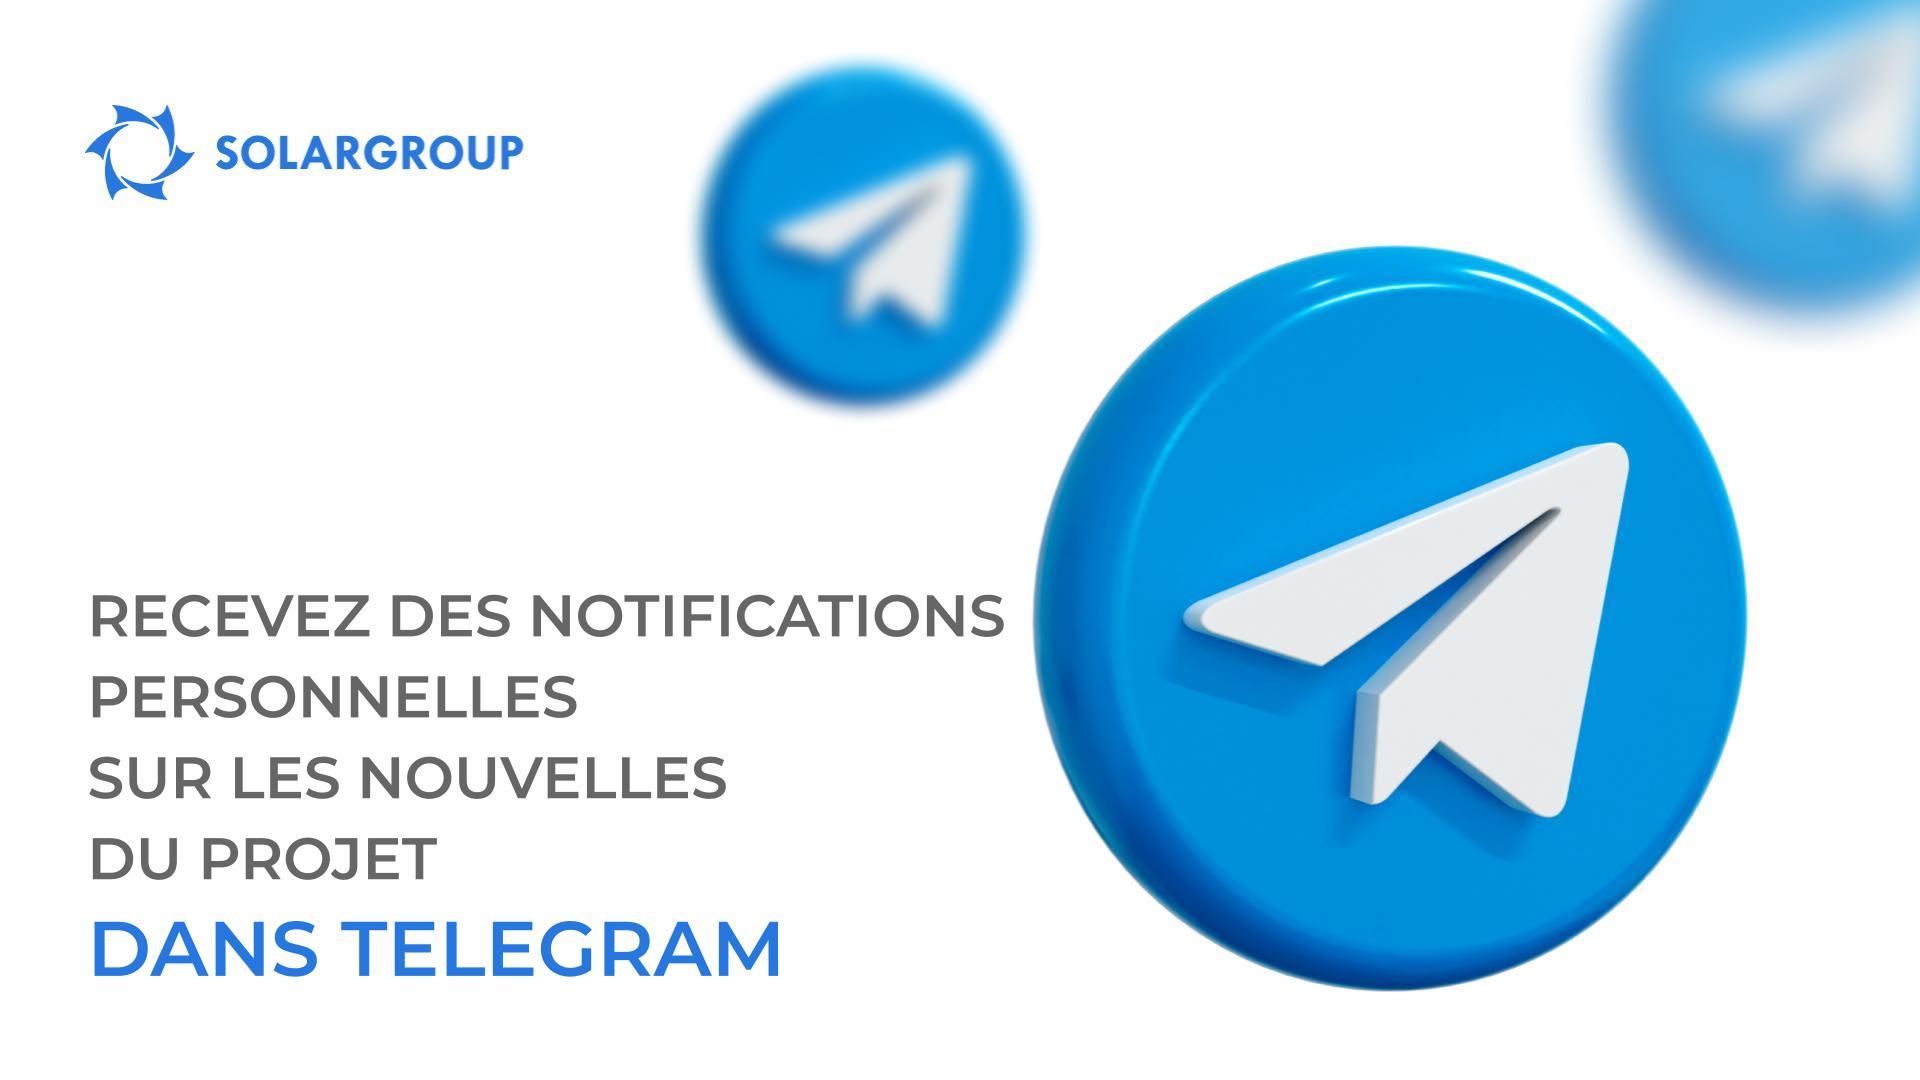 Recevez des notifications des nouvelles les plus importantes pour vous dans le projet dans votre compte Telegram